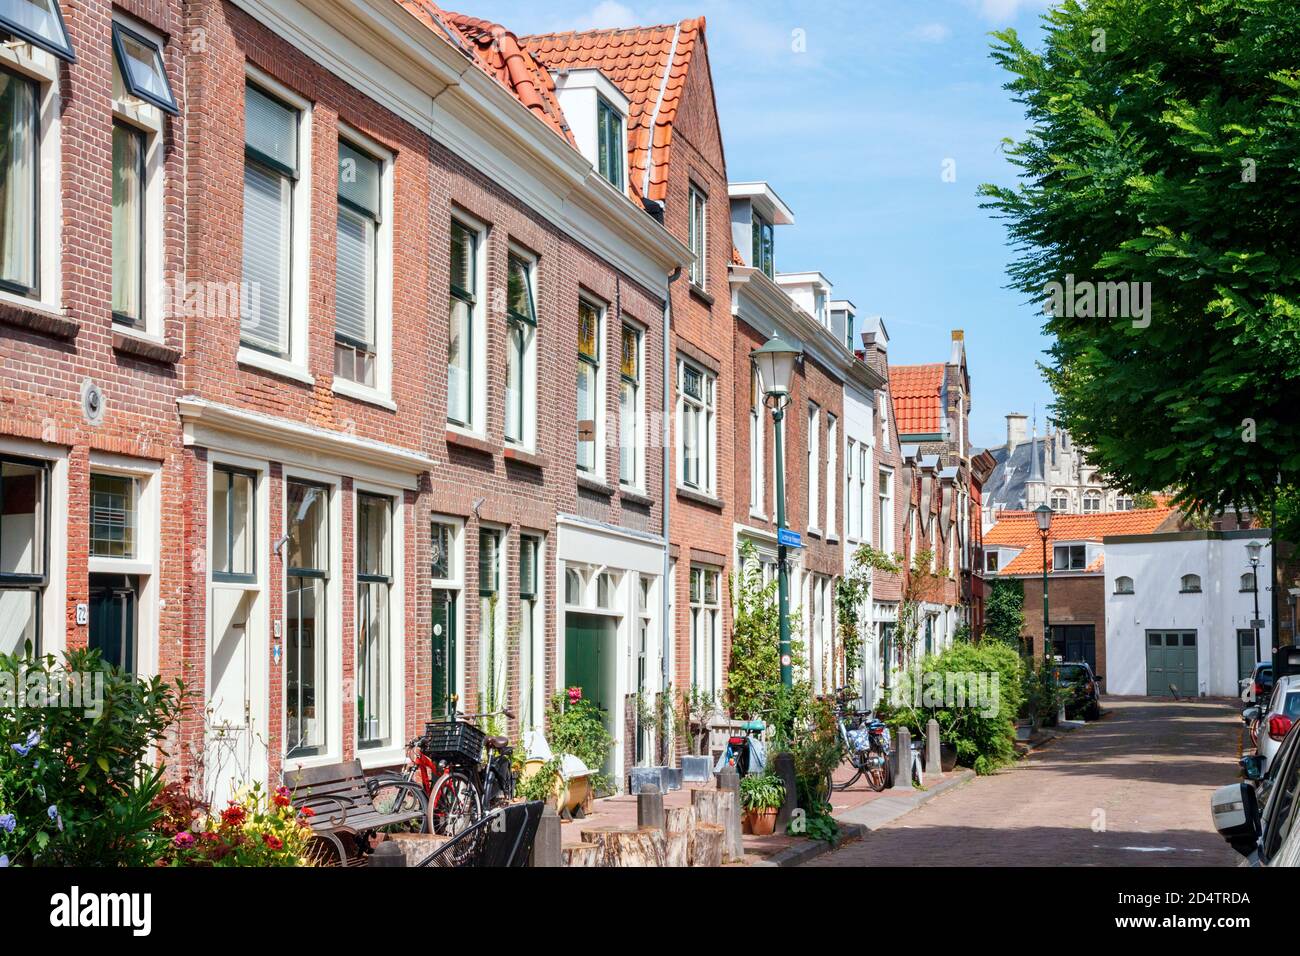 Blick auf das Stadtzentrum von Gouda. Achter de Vismarkt Straße mit typisch holländischen Häusern an einem sonnigen Nachmittag. Südholland, Niederlande. Stockfoto